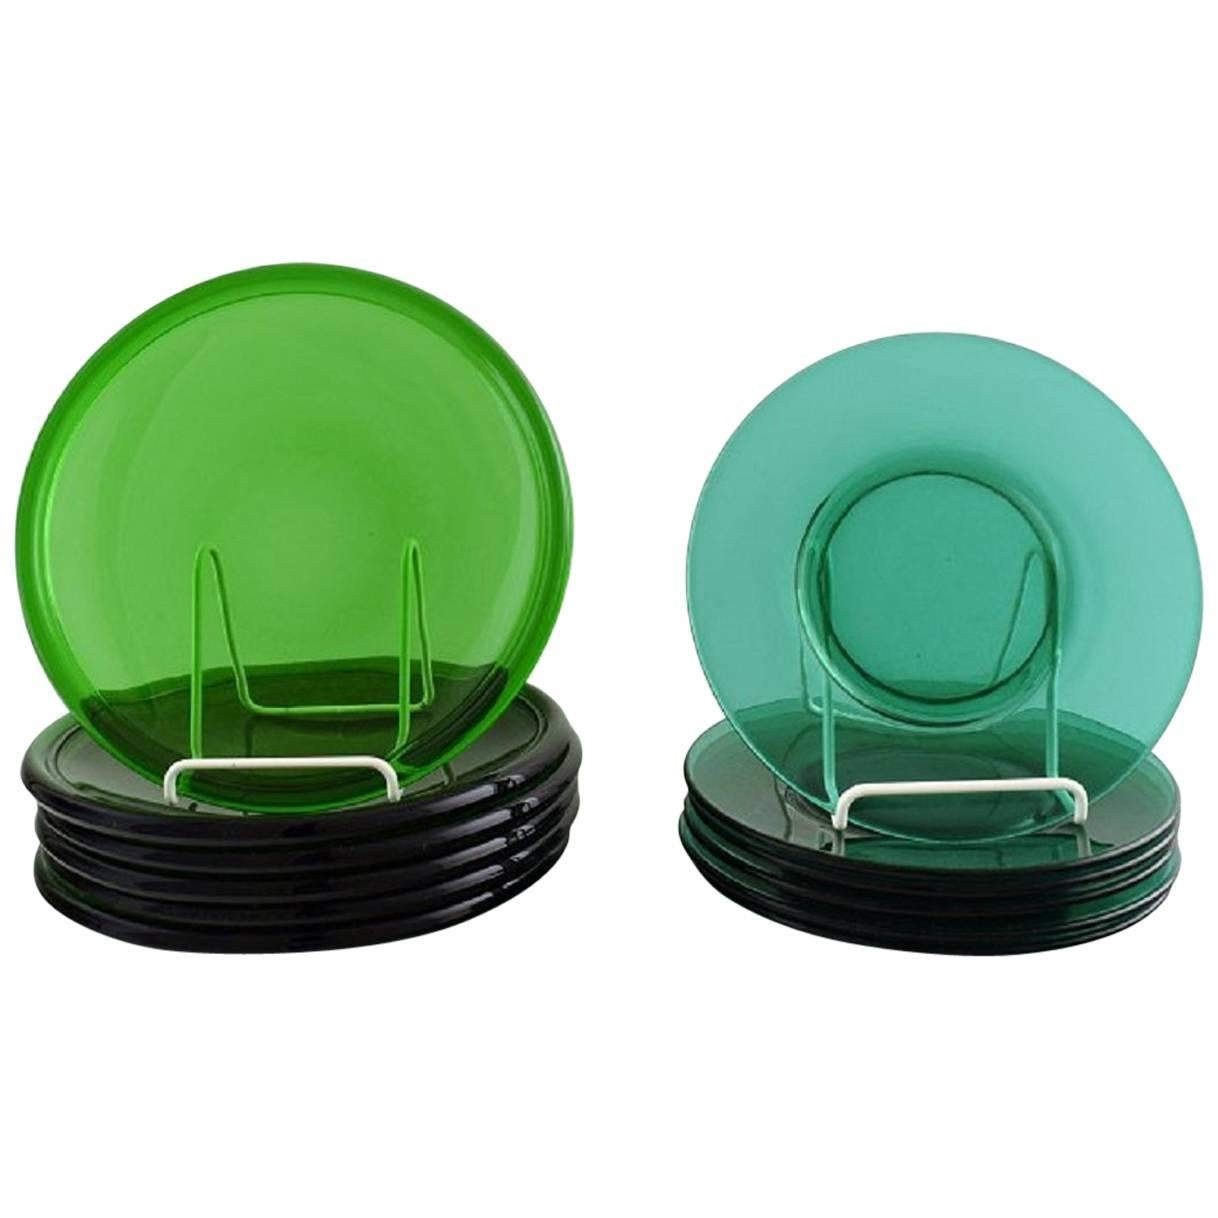 12 Plates in Green Art Glass, Josef Frank, Reijmyre / Gullaskruf